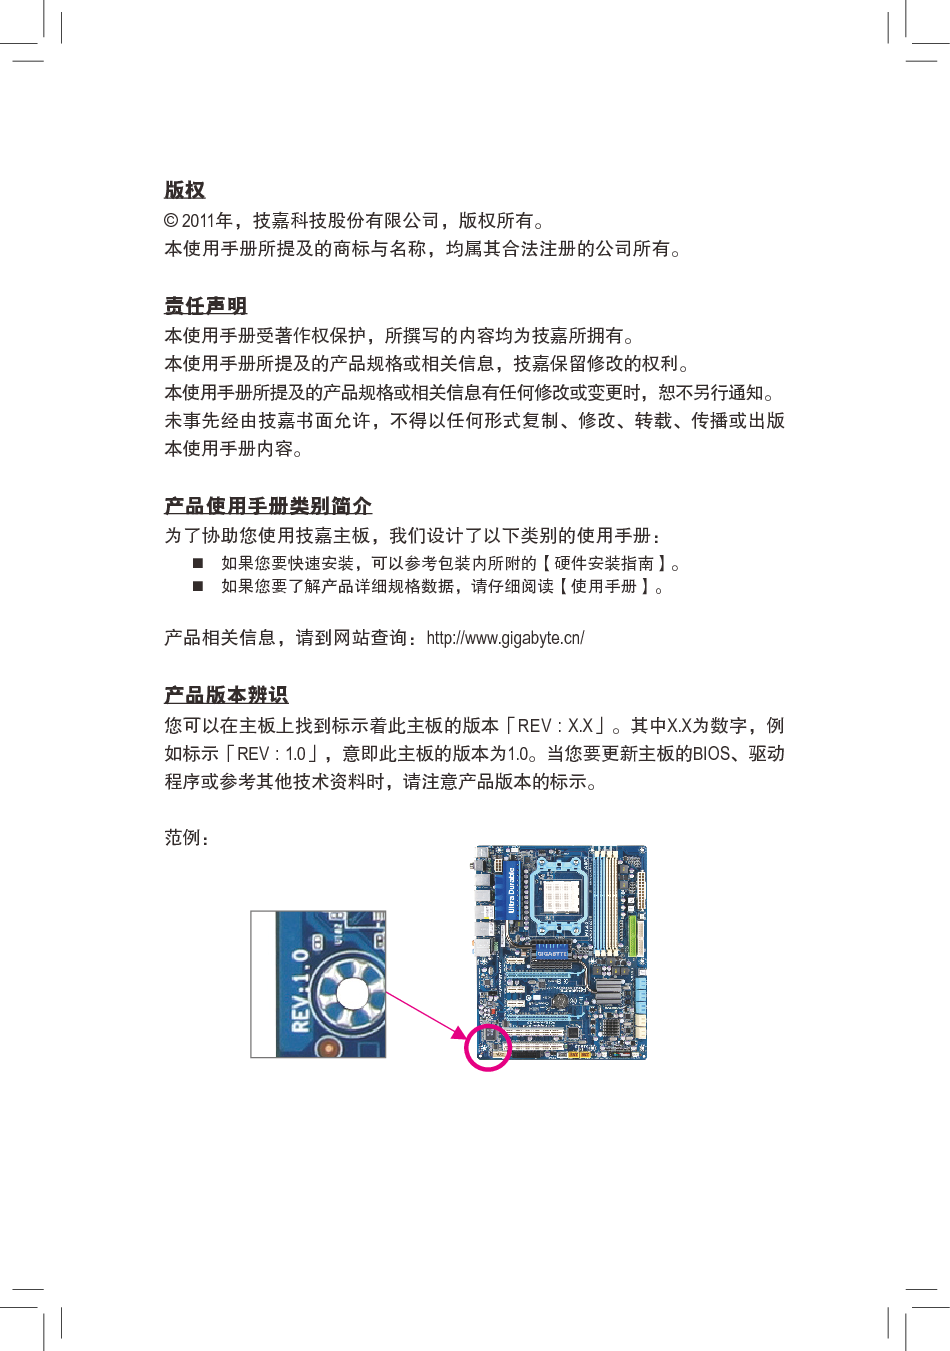 技嘉 Gigabyte GA-870A-USB3 使用手册 第2页